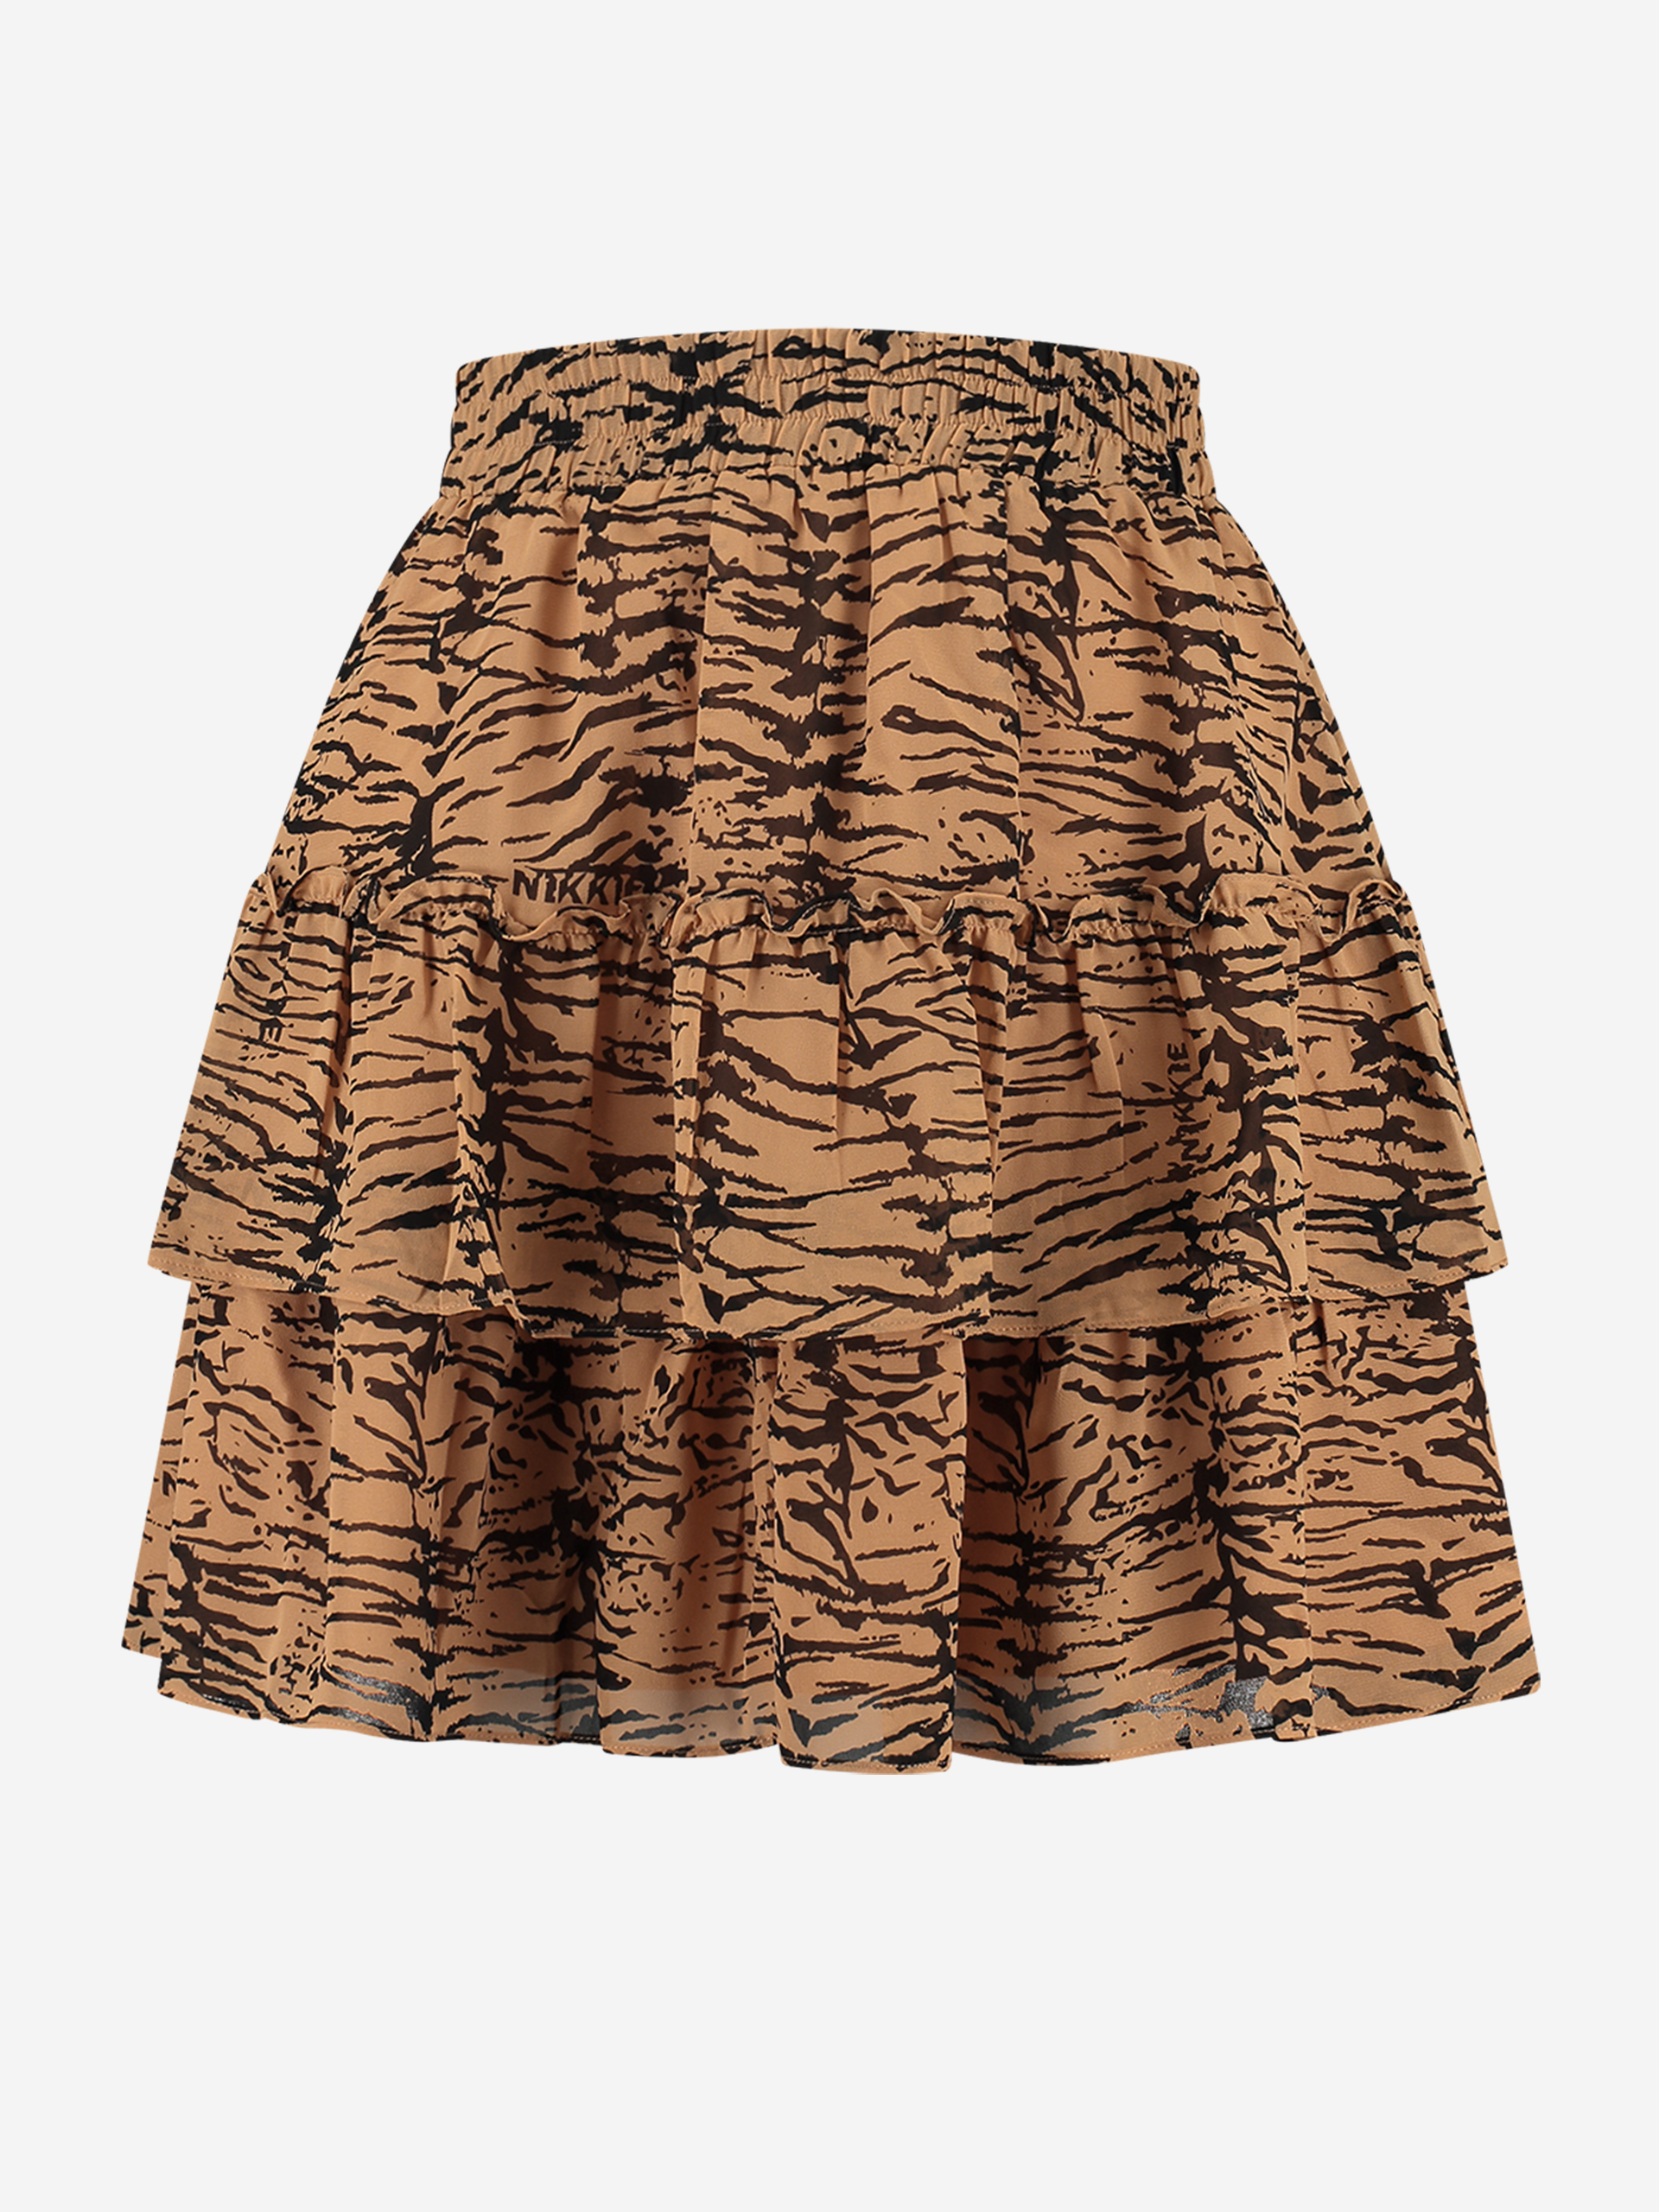 Foster Skirt